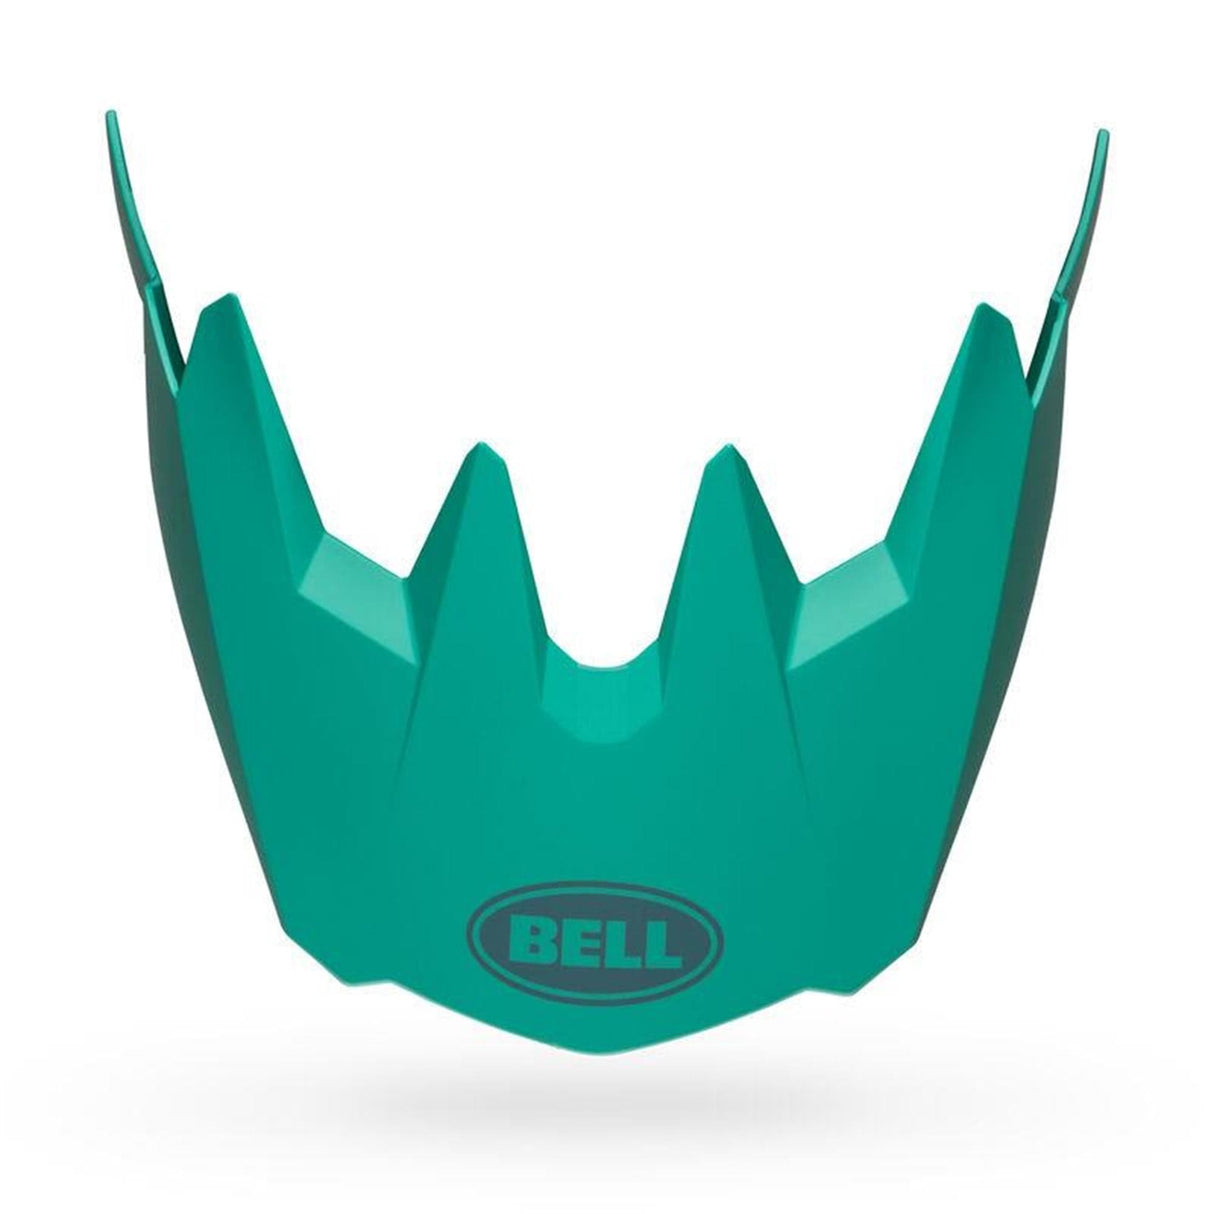 Bell Sanction 2 Helmet Visor: Matte Turquoise 2Xs-S